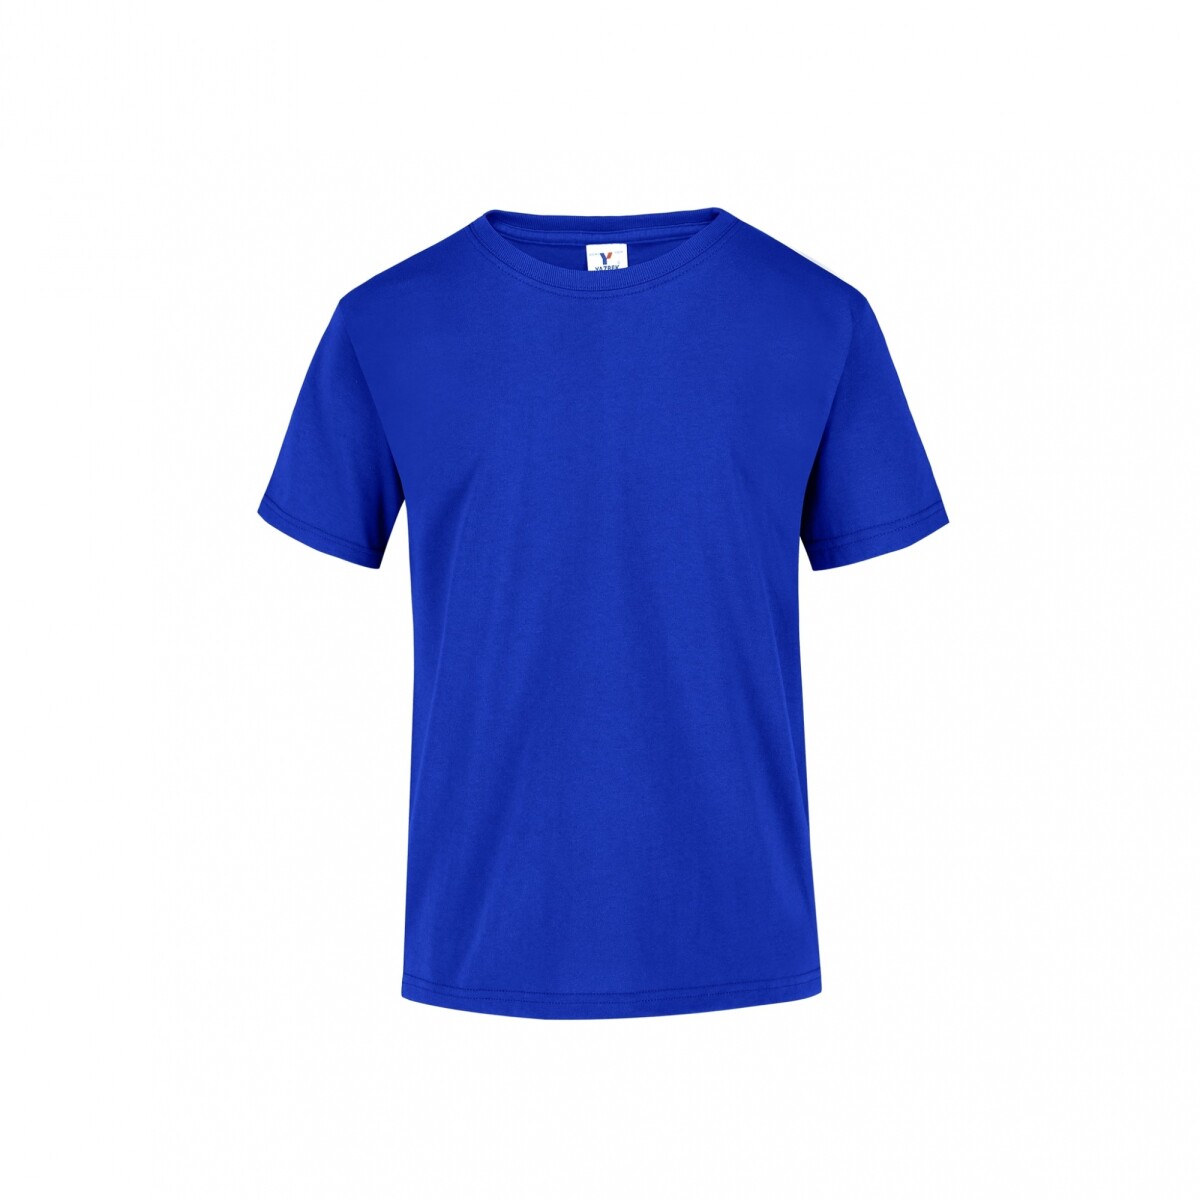 Camiseta a la base joven - Azul royal 